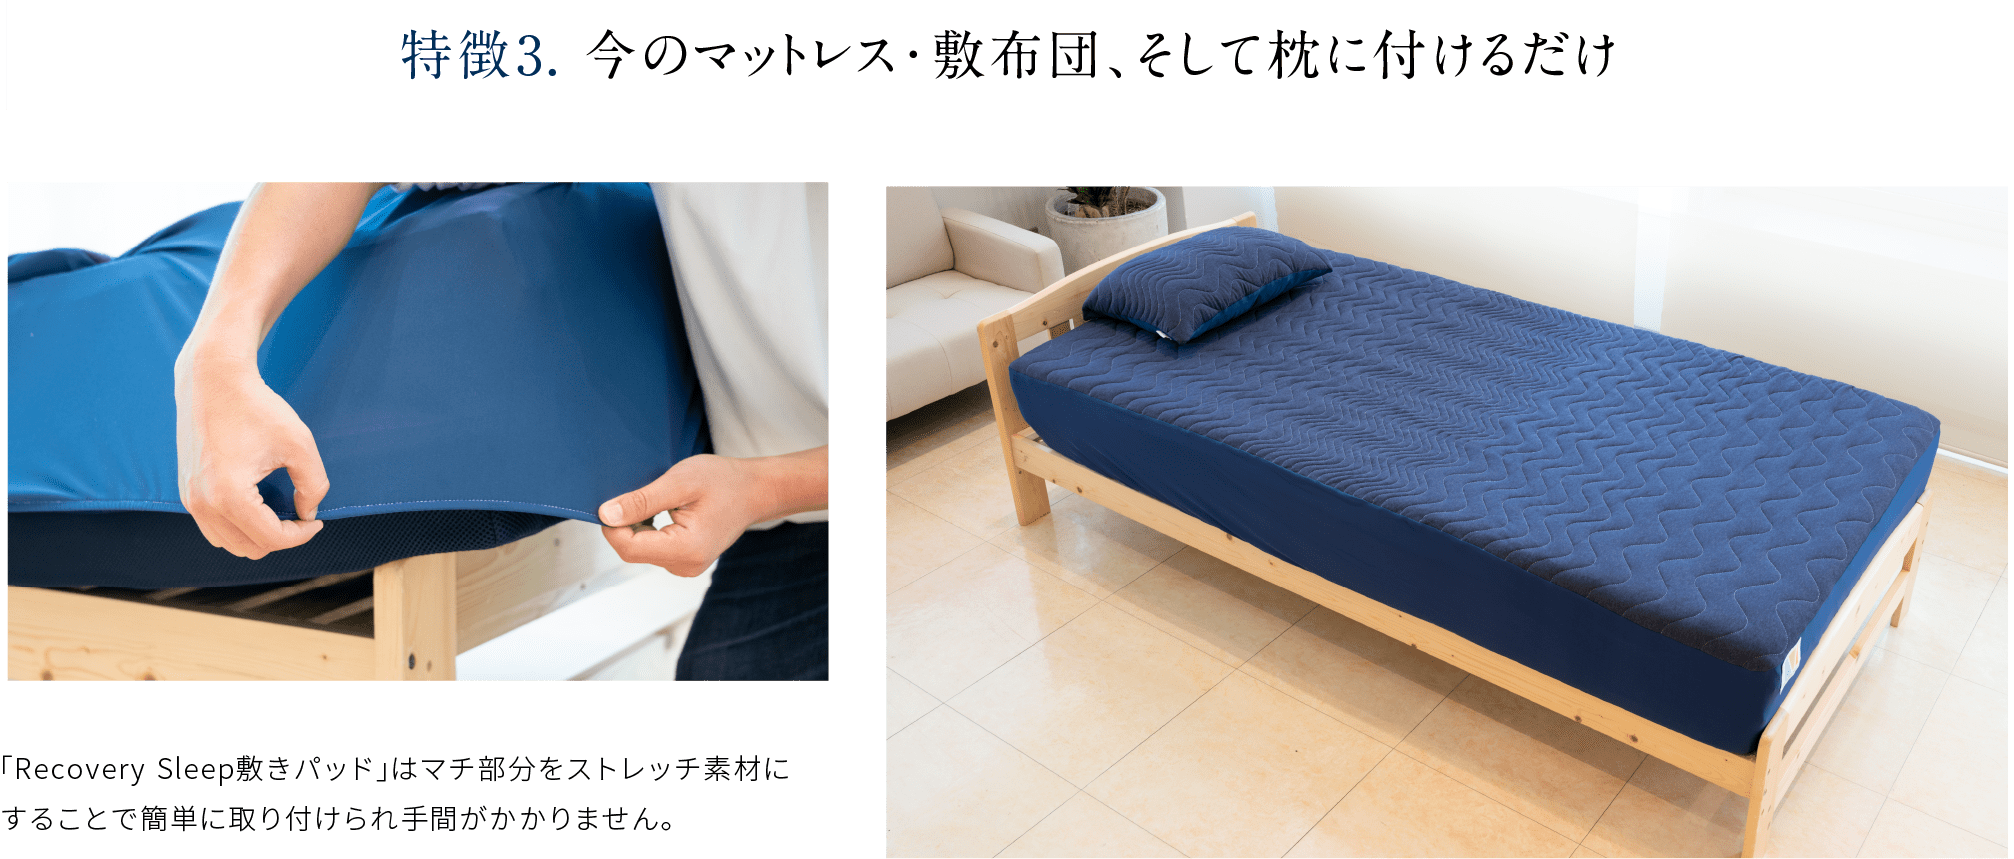 特徴3. 今のマットレス・敷布団、そして枕に付けるだけ 「Recovery Sleep敷きパッド」はマチ部分をストレッチ素材にすることで簡単に取り付けられ手間がかかりません。